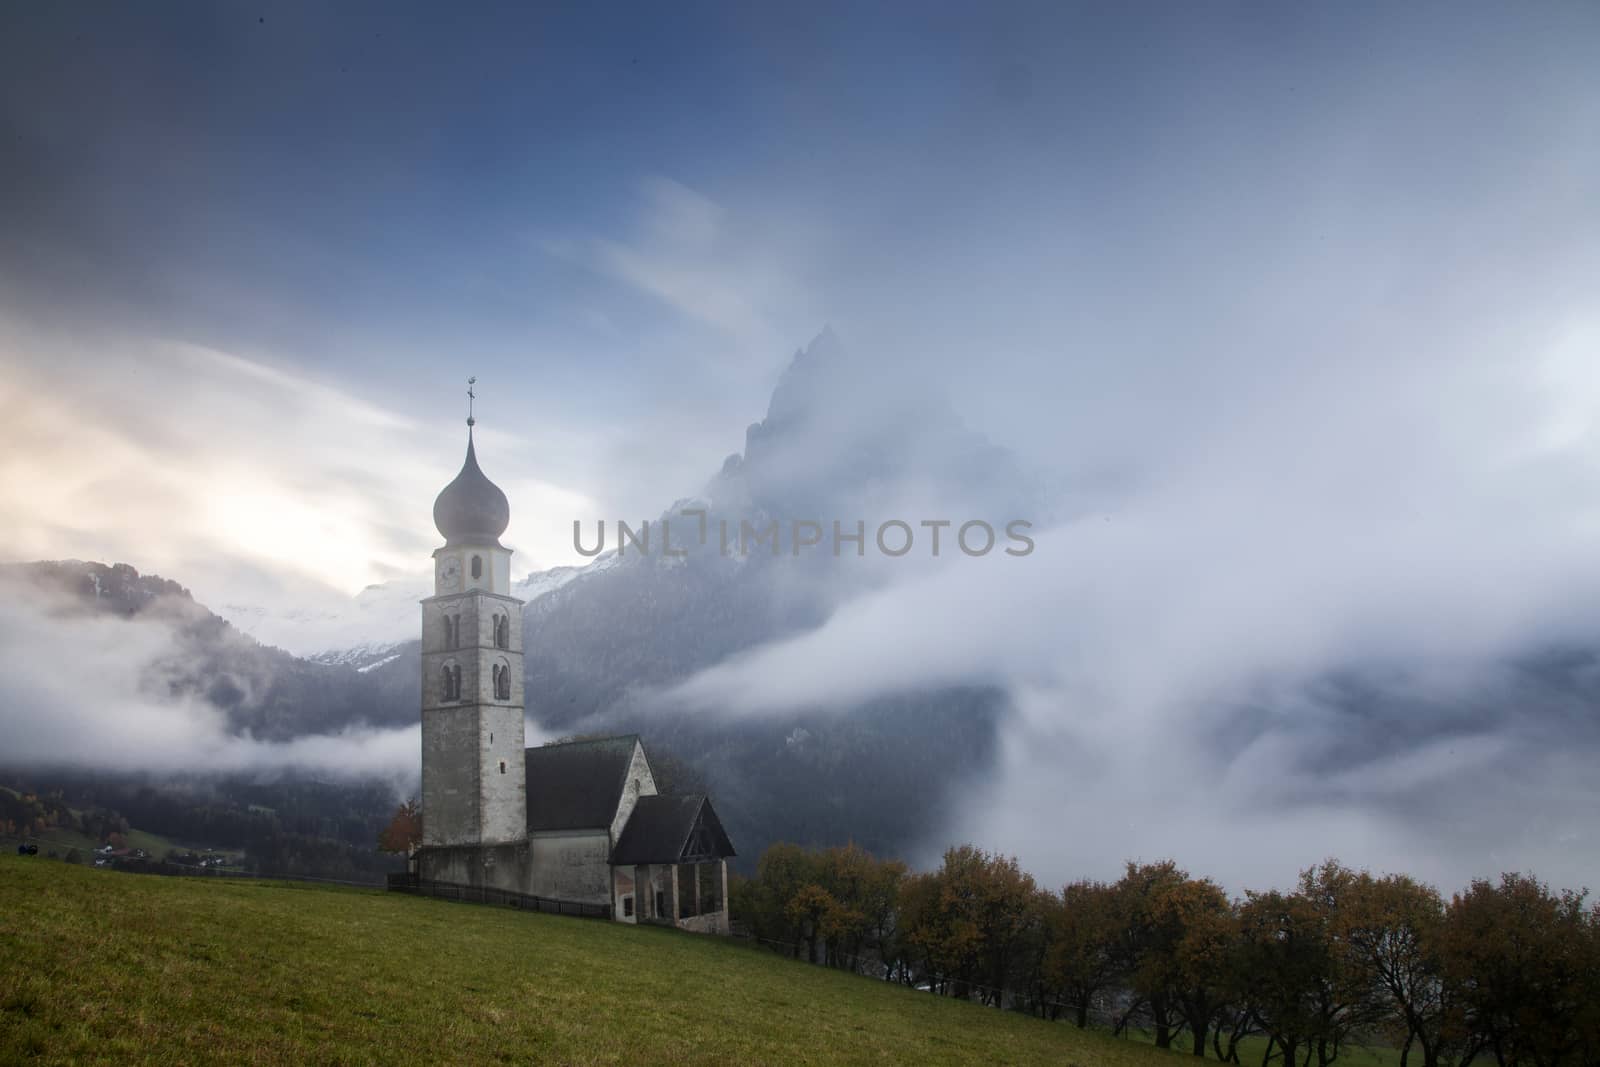 san Valentino church on a foggy late autumn day, Siusi allo Sciliar, Castelrotto, Dolomites, Italy